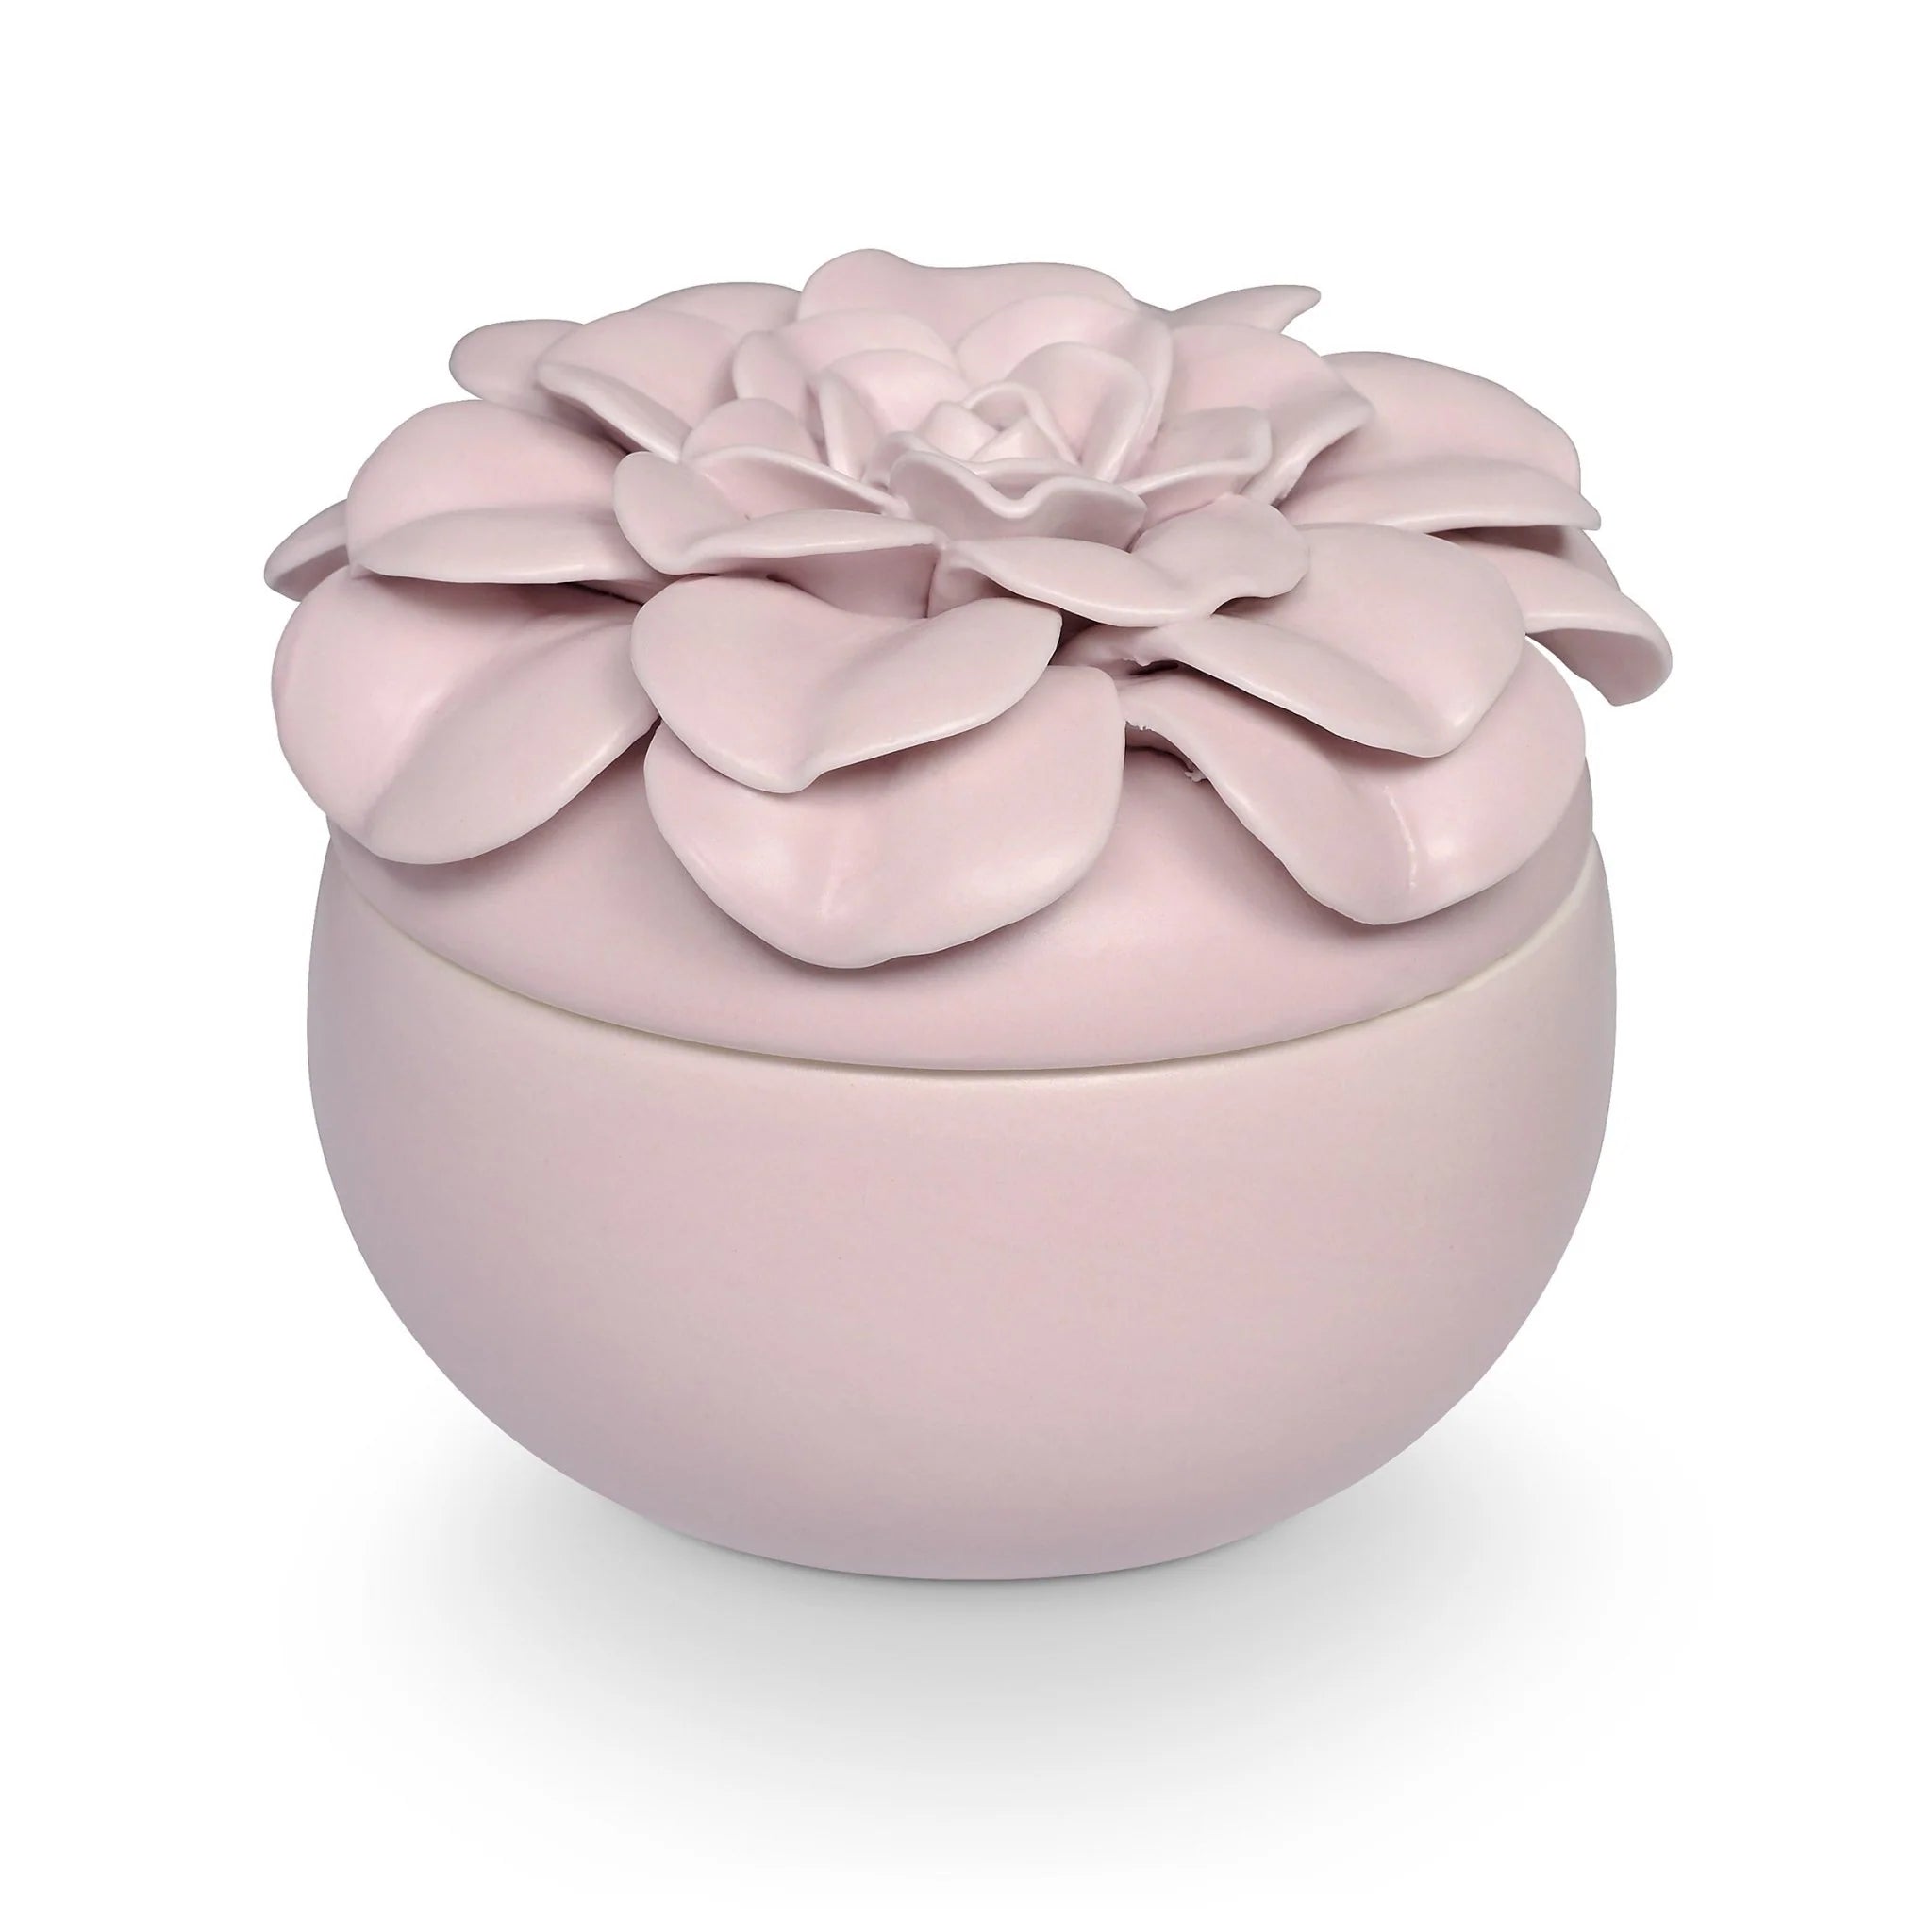 Ceramic Flower Candle - Lavender La La